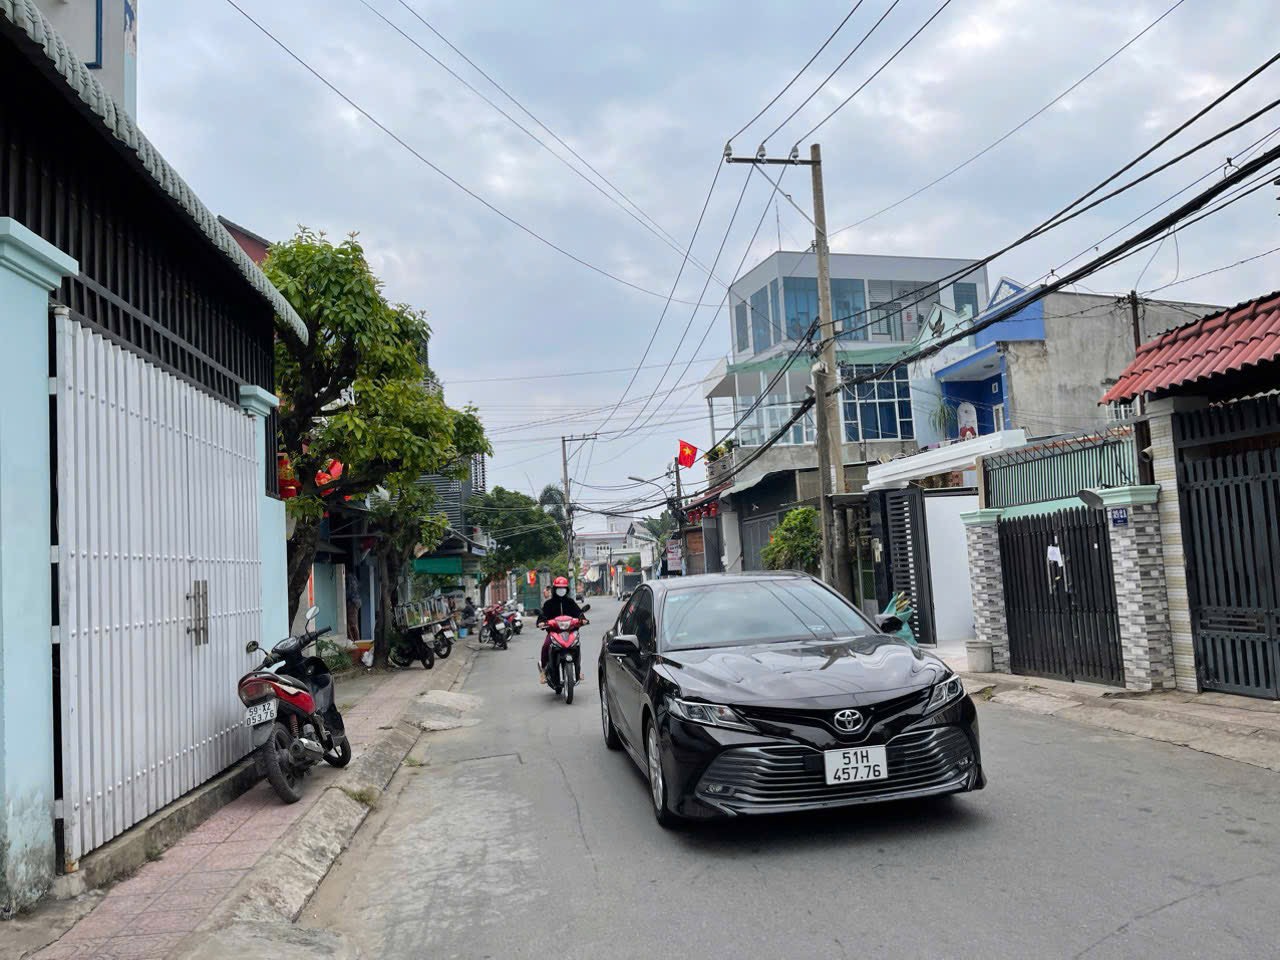 Bán hoặc cho thuê nhà phố mới xây dựng đã hoàn công thuận tiện kinh doanh, Tăng Nhơn Phú A-Tp Thủ - Ảnh chính